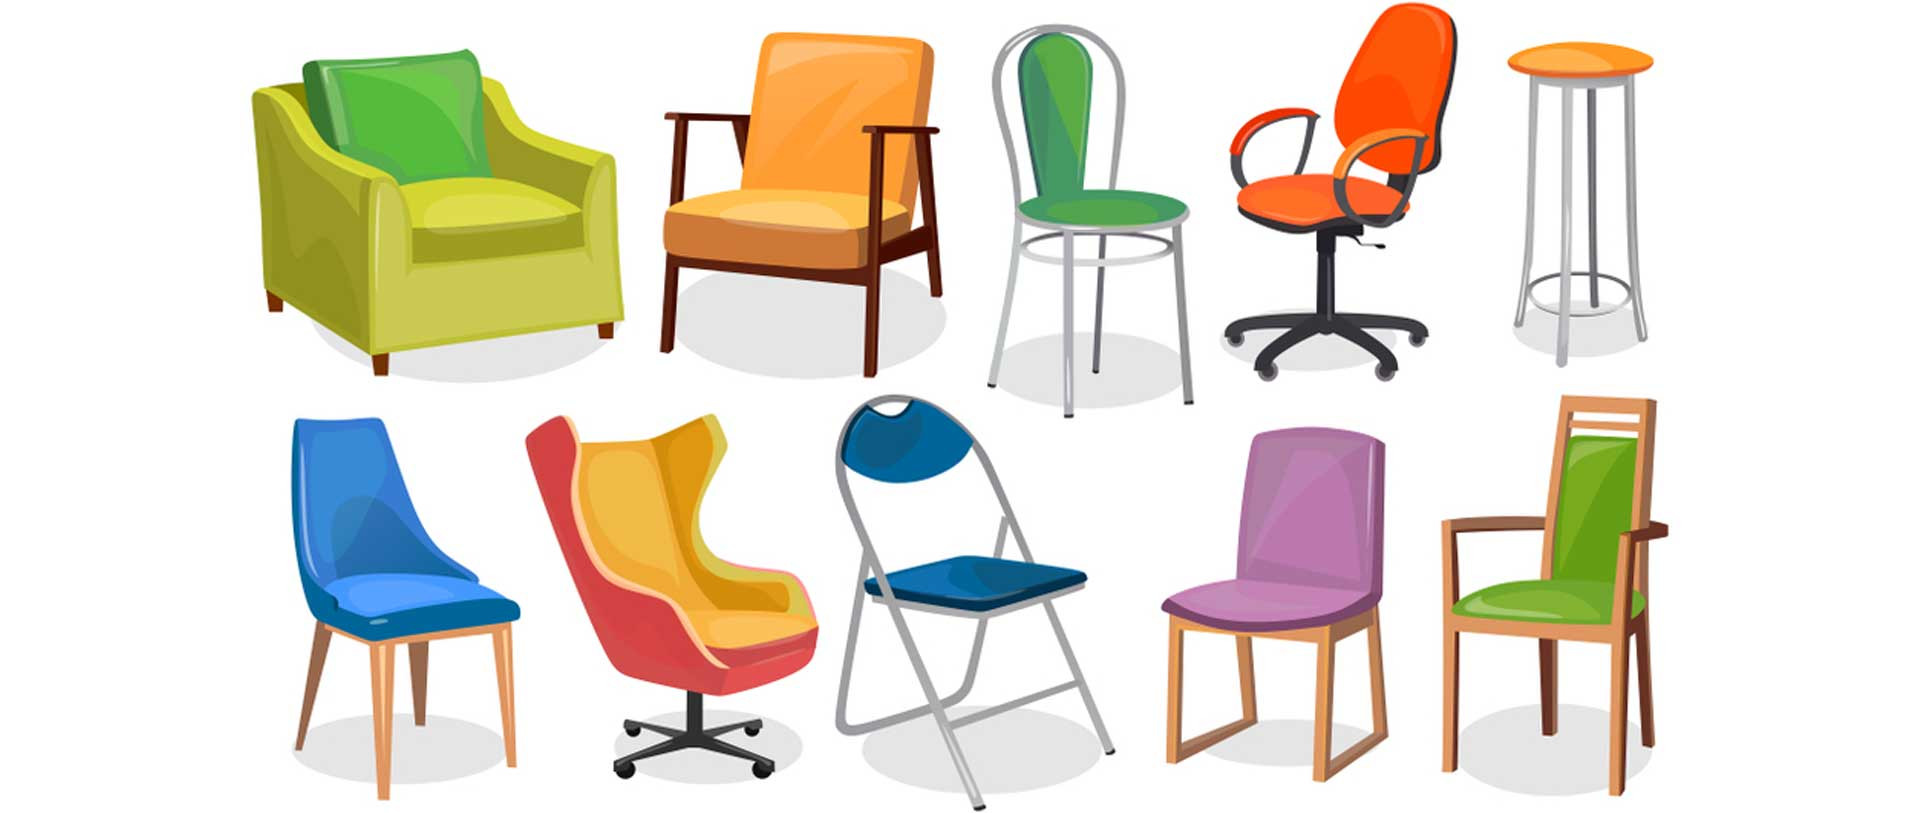 انواع صندلی- معرفی انواع صندلی موجود در بازار